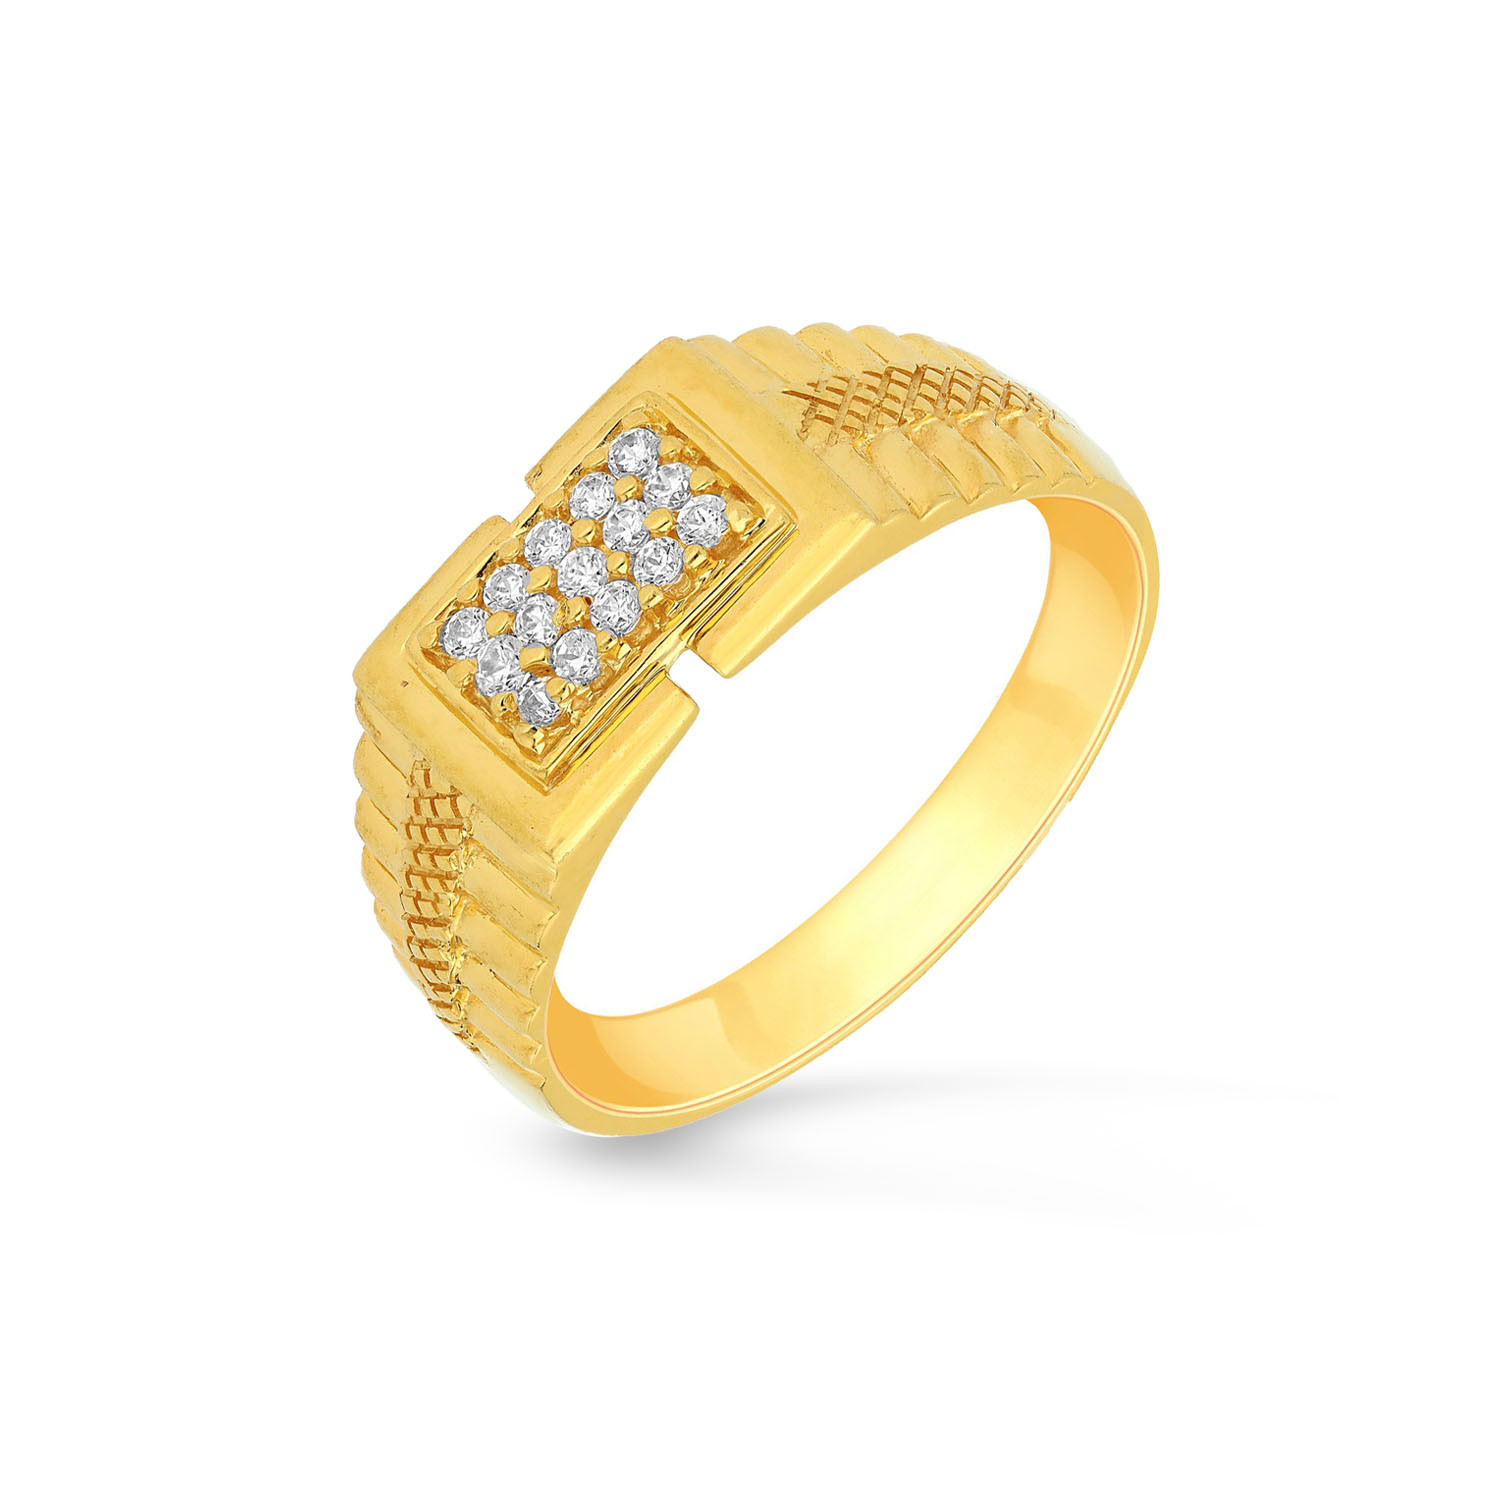 Buy Malabar Gold and Diamonds 22 KT purity Yellow Gold Ring  MHAAAAAAAYJQ_Y_12 for Women at Amazon.in